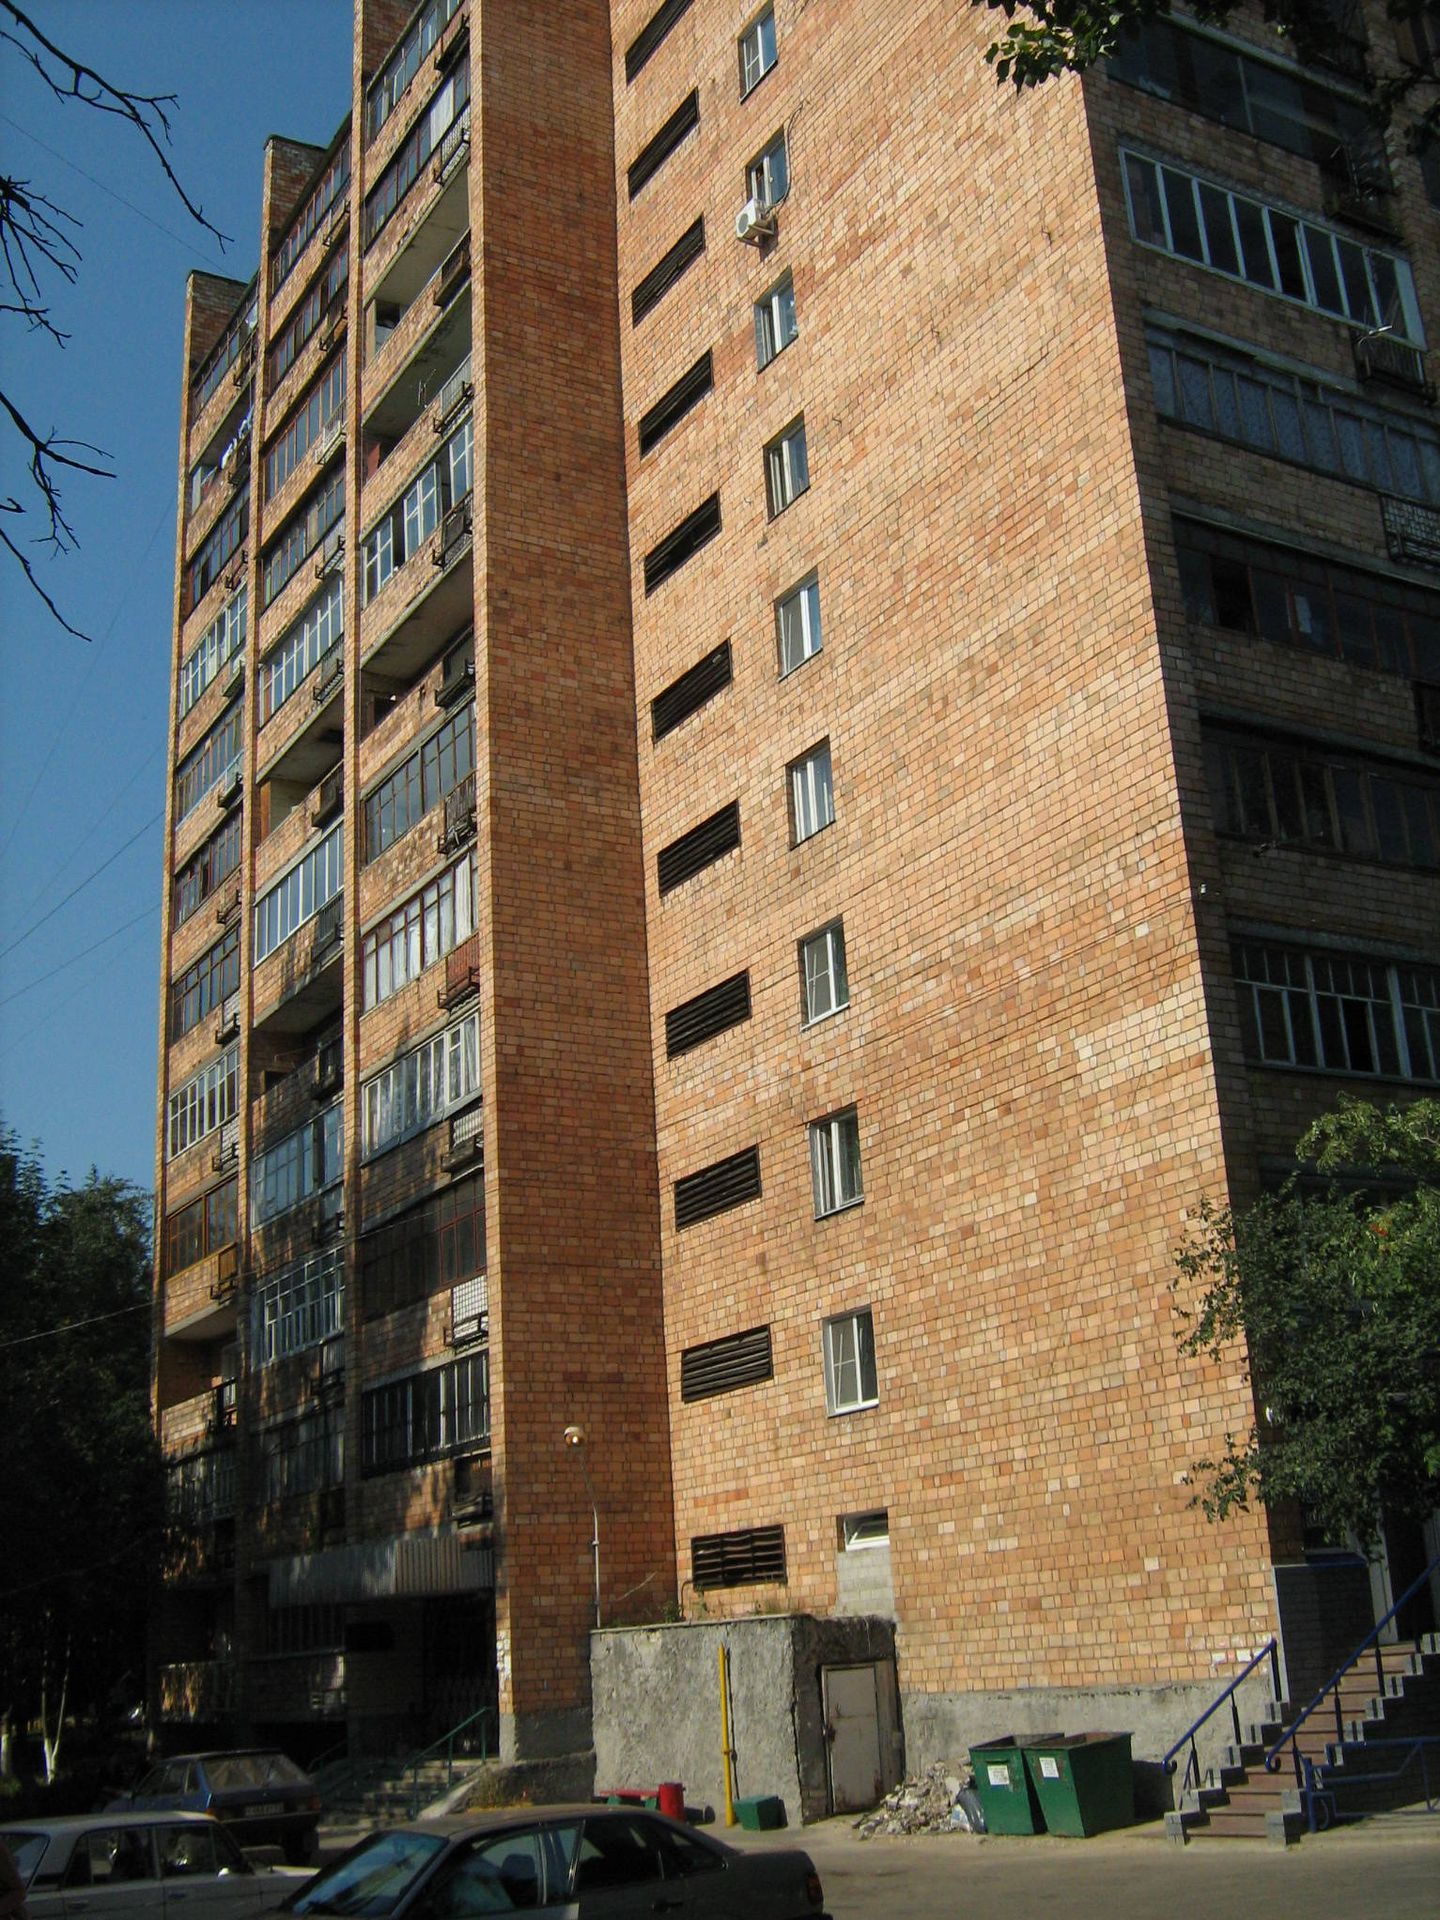 El apartamento donde Sajárov vivió durante los años 80, actualmente convertido en museo. (Vmenkov/CC)